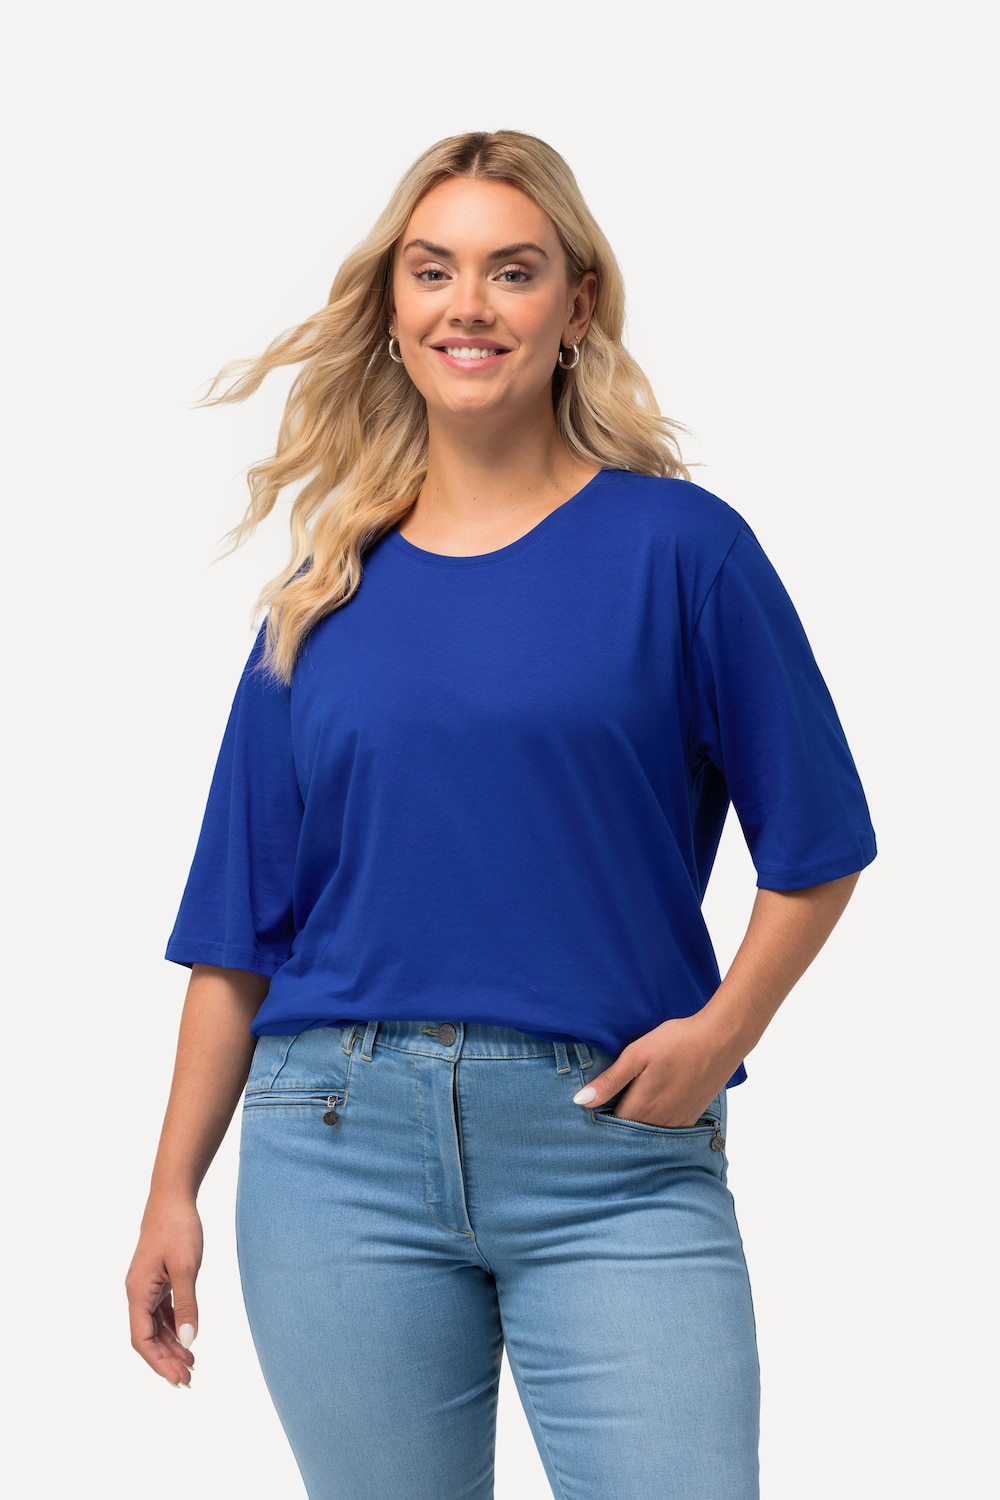 Grote Maten T-Shirt, Dames, blauw, Maat: 50/52, Katoen/Viscose, Ulla Popken